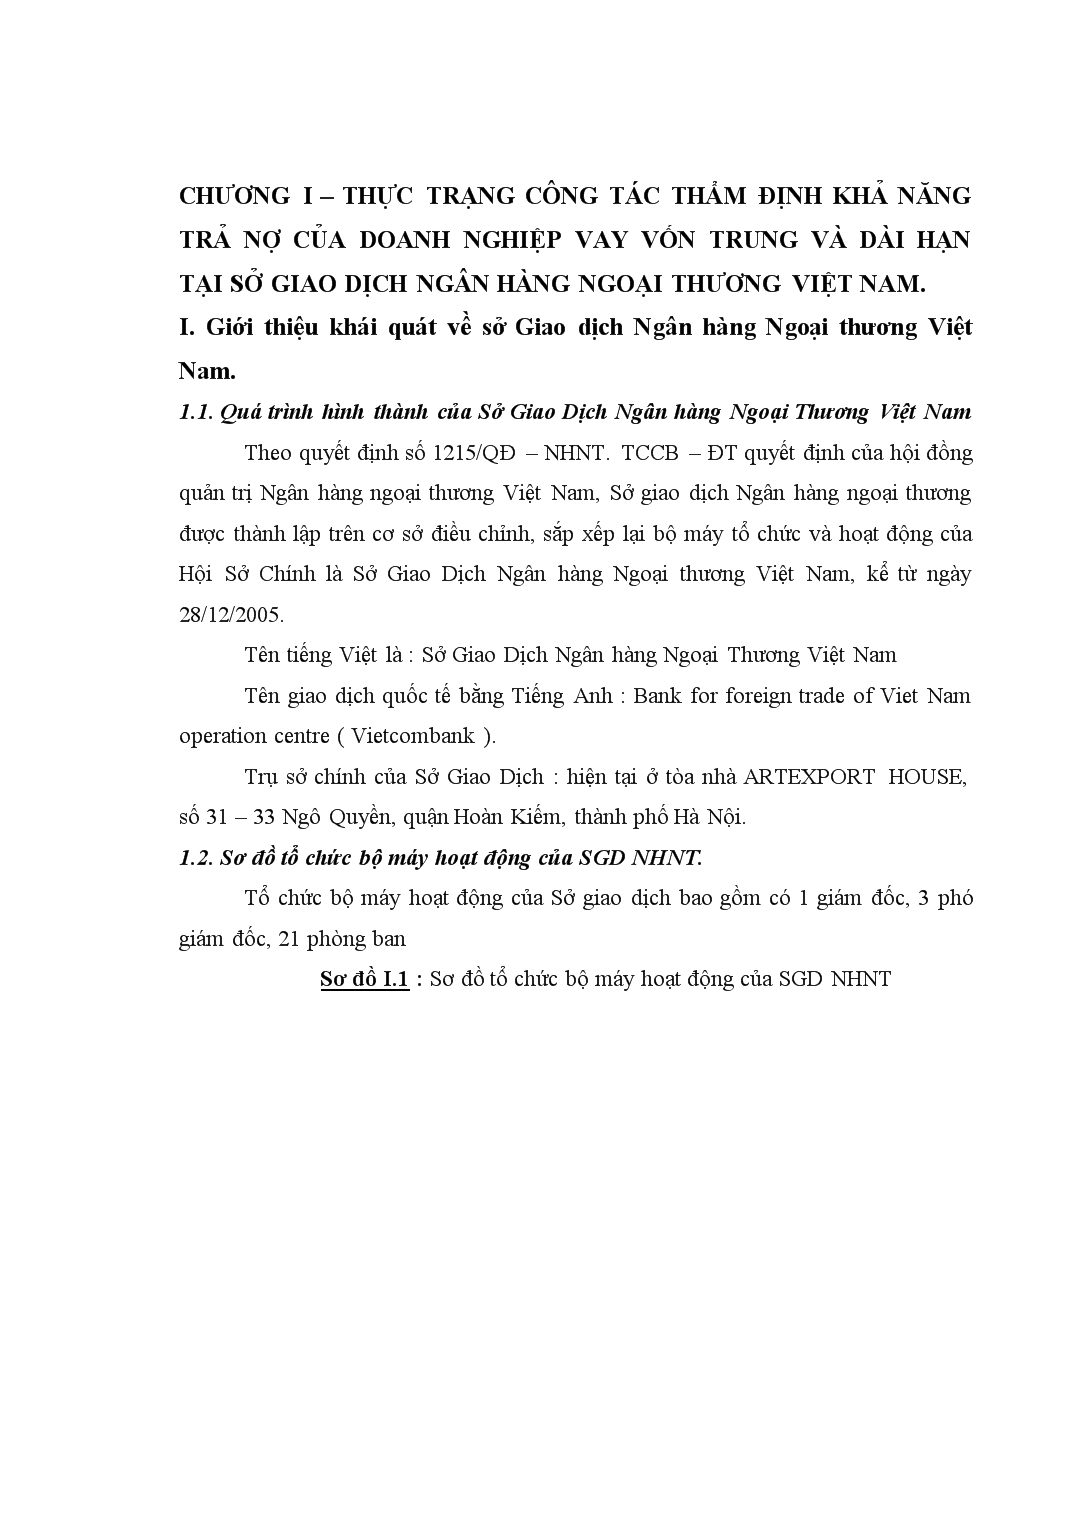 Chuyên đề Thực trạng công tác thẩm định khả năng trả nợ của khách hàng vay vốn trung và dài hạn tại sở giao dịch ngân hàng ngoại thương Việt Nam trang 5